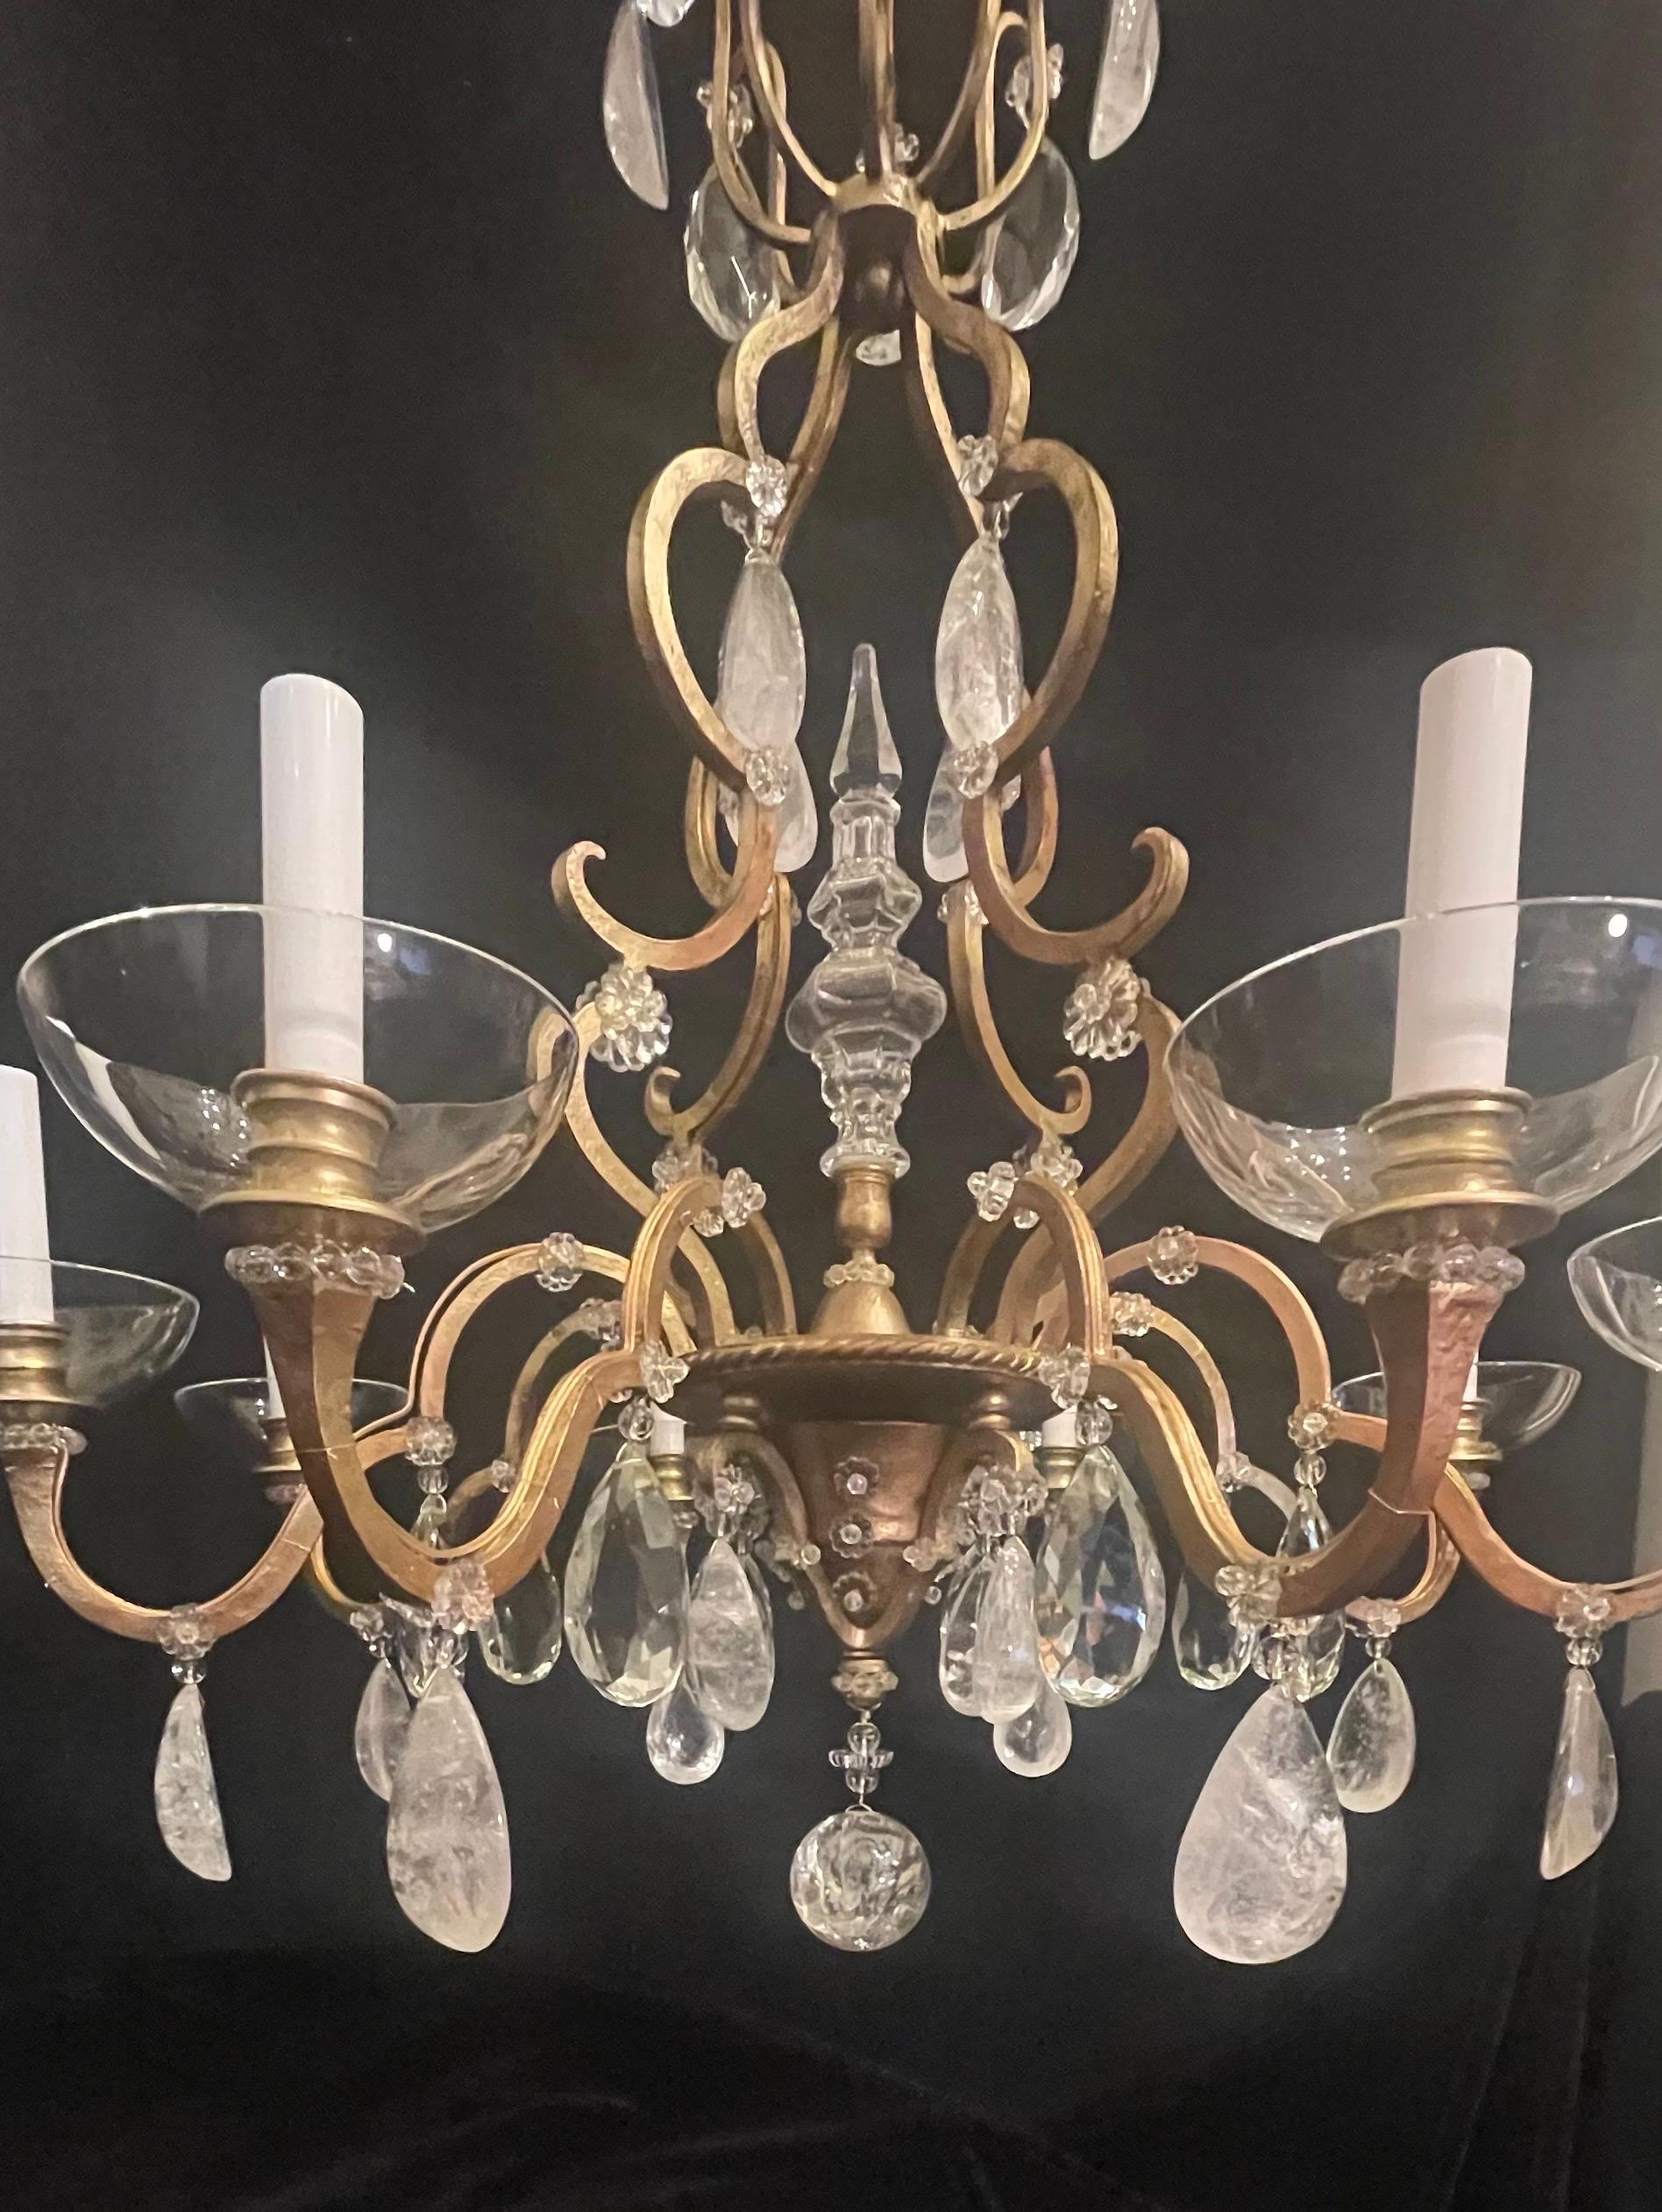 Merveilleux lustre à huit candélabres en forme de cage d'oiseau de style Louis XVI, à la manière de la Maison Baguès.
Entièrement refait avec de nouvelles prises de courant 